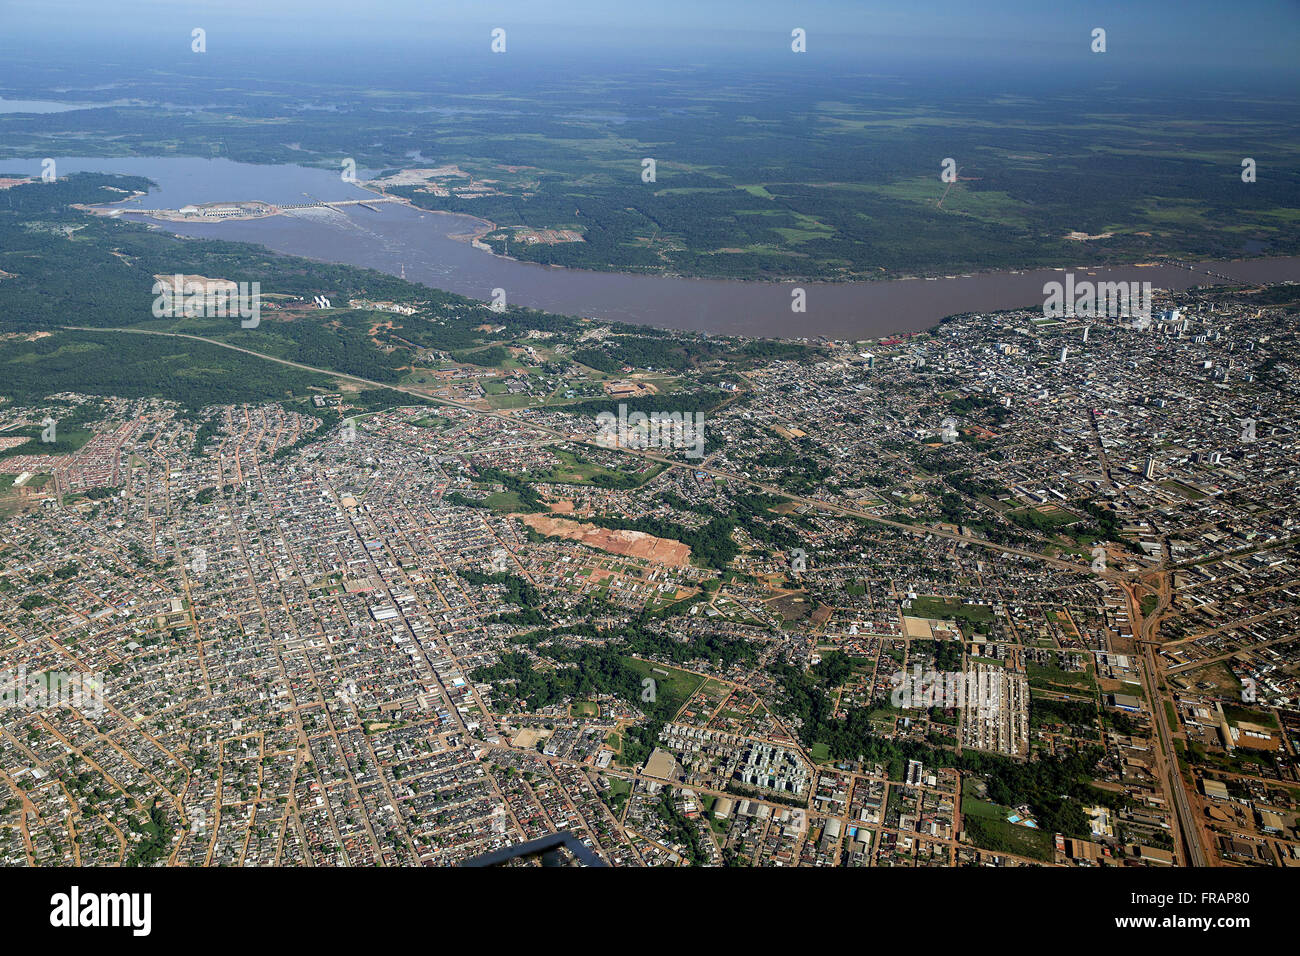 Vista aerea della crescita urbana con enfasi sul fiume Madeira in background Foto Stock